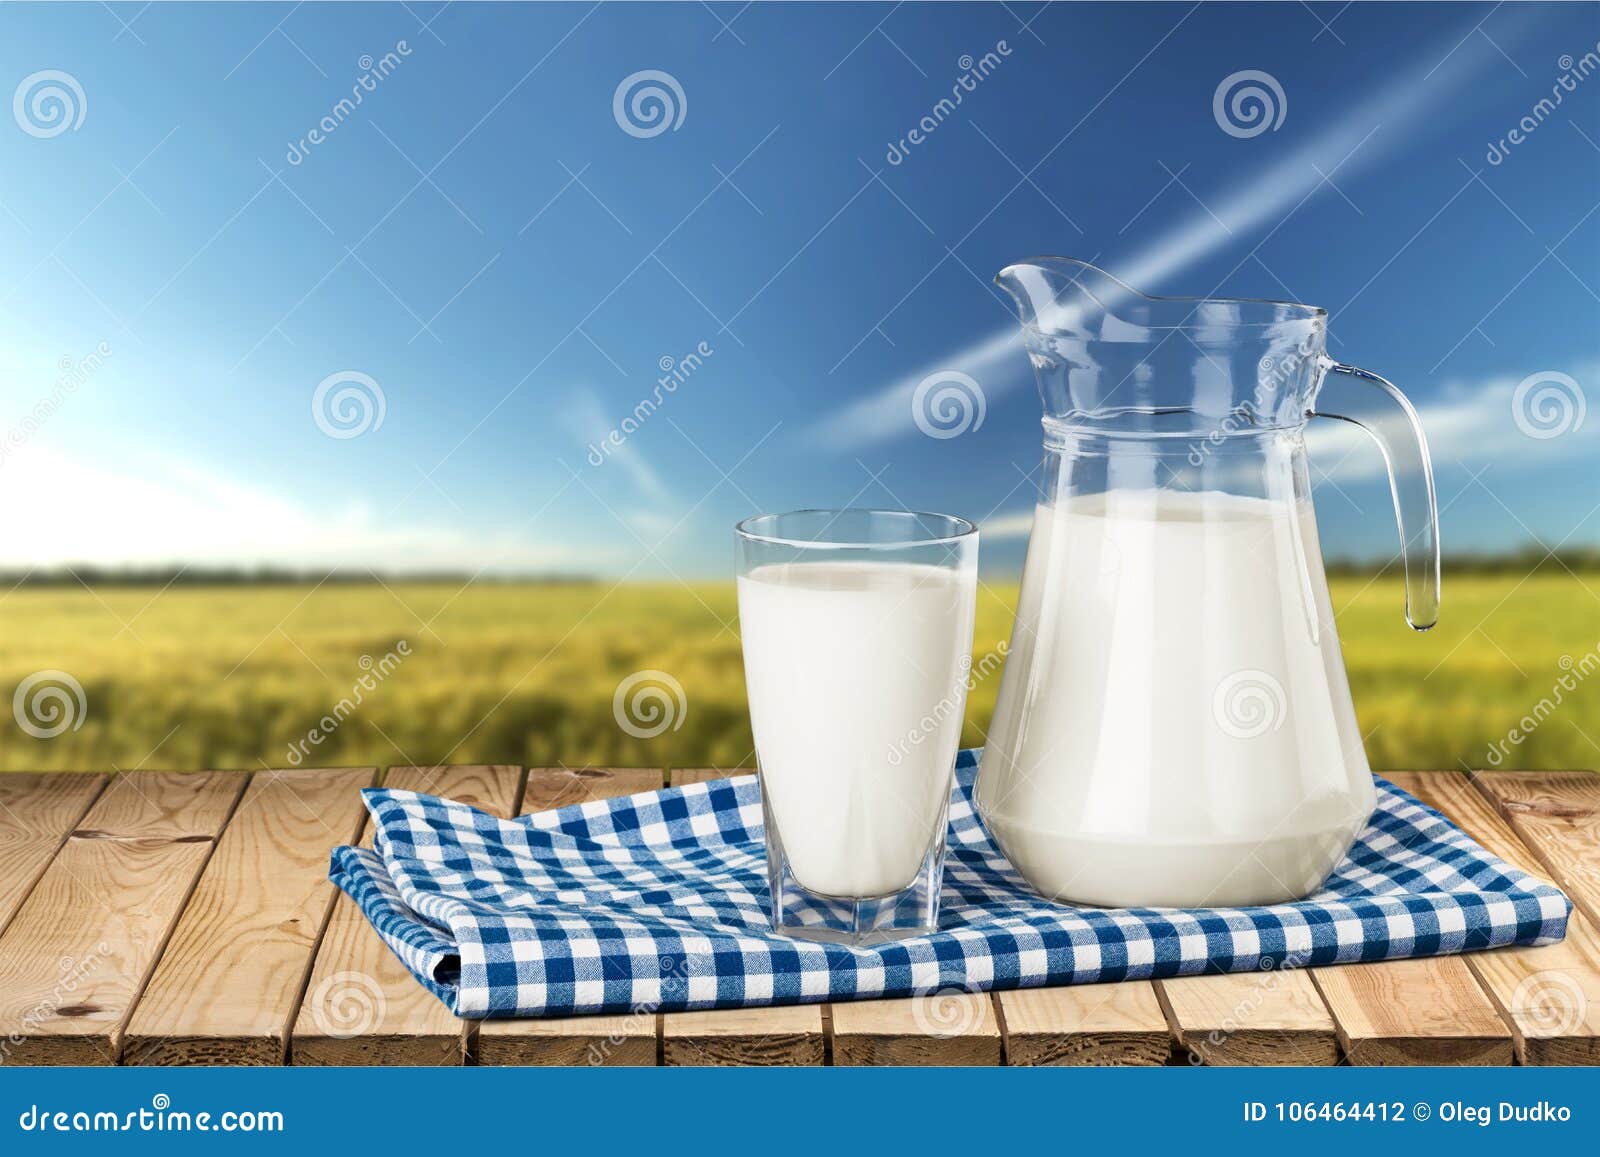 Покажи картинку молока. Молоко. Молочные продукты. Молоко в стакане. Фон для молочной продукции.